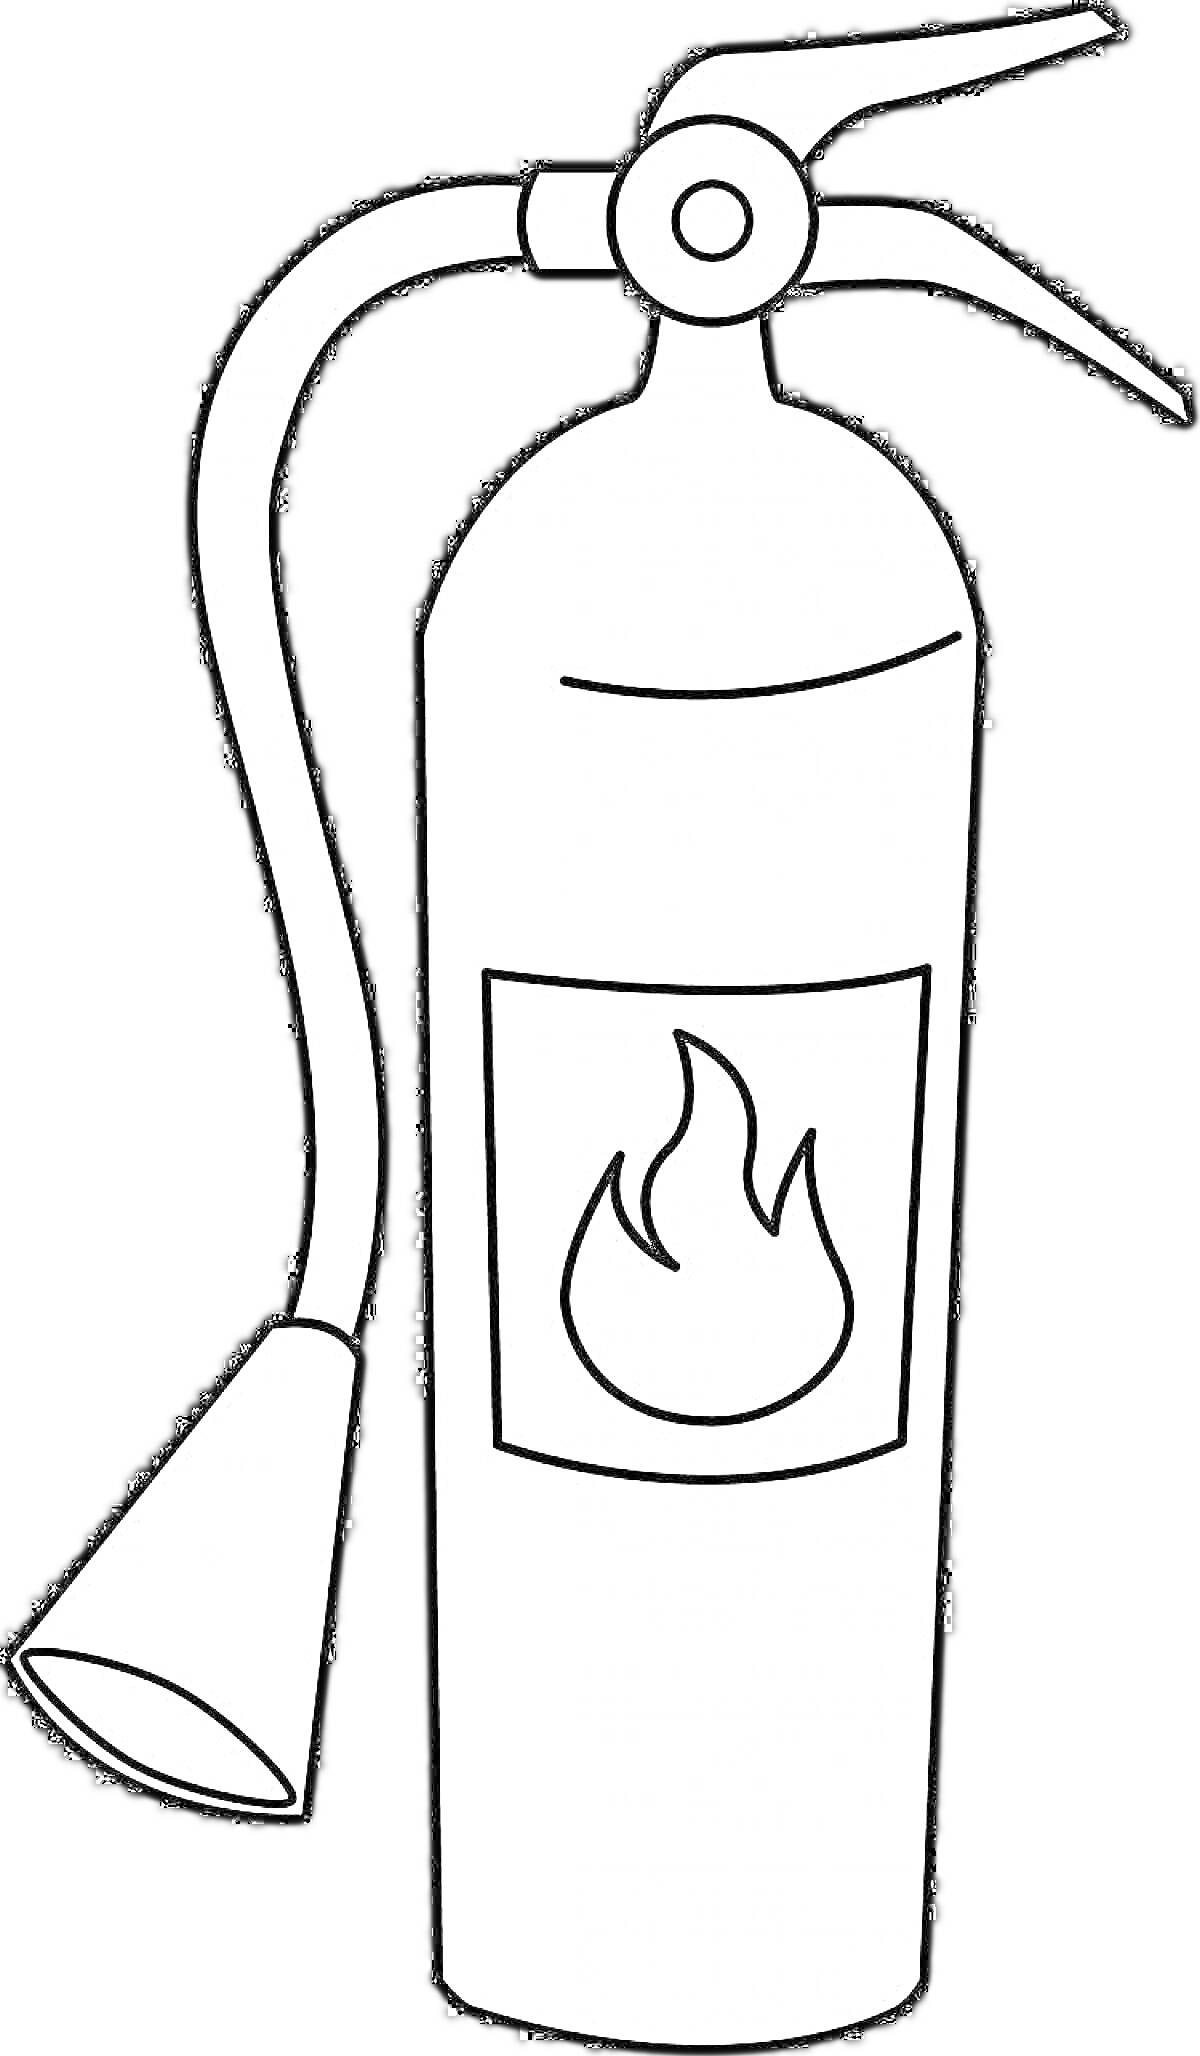 Огнетушитель с ручкой, соплом и символом пламени